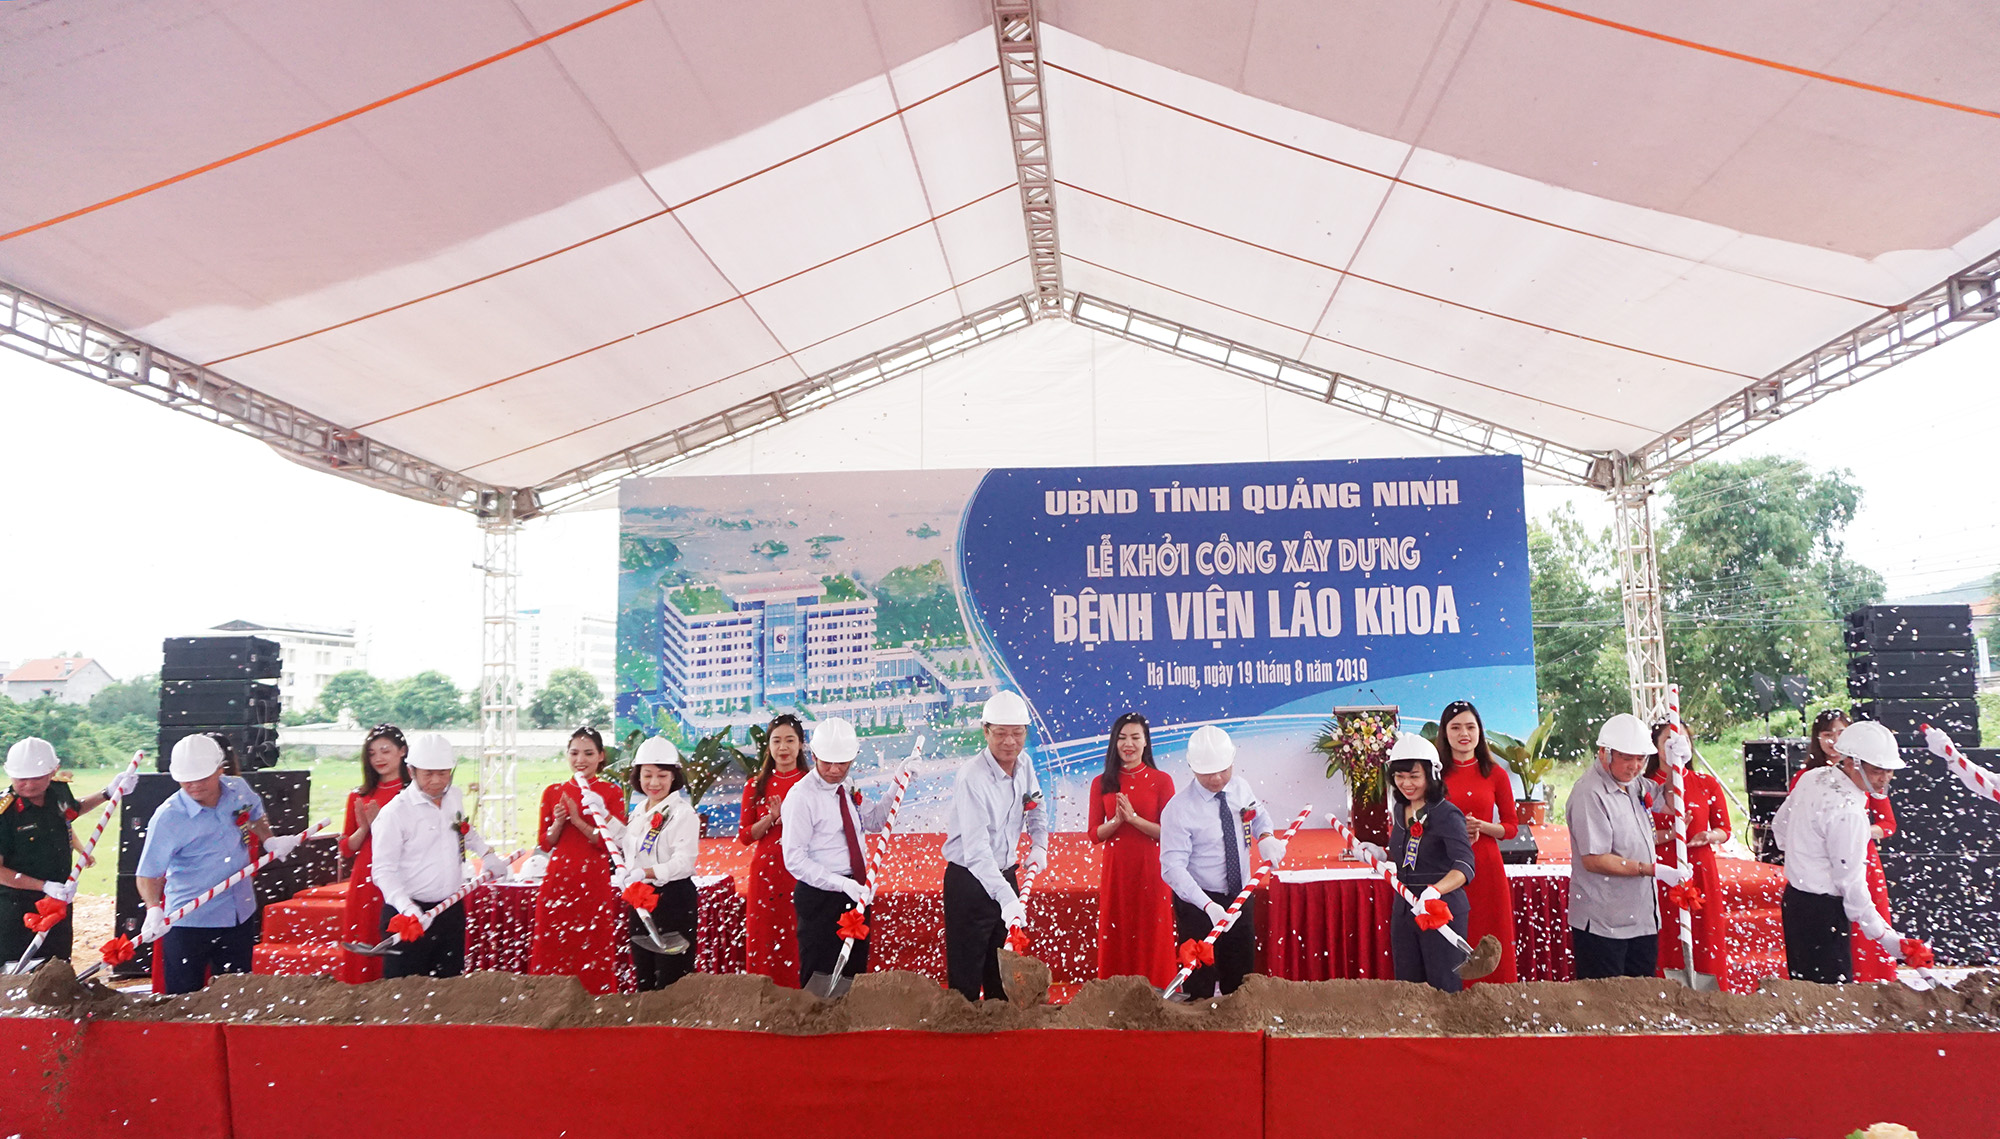 Các đồng chí lãnh đạo tỉnh làm lễ khởi công xây dựng dự án Bệnh viện Lão khoa tỉnh.